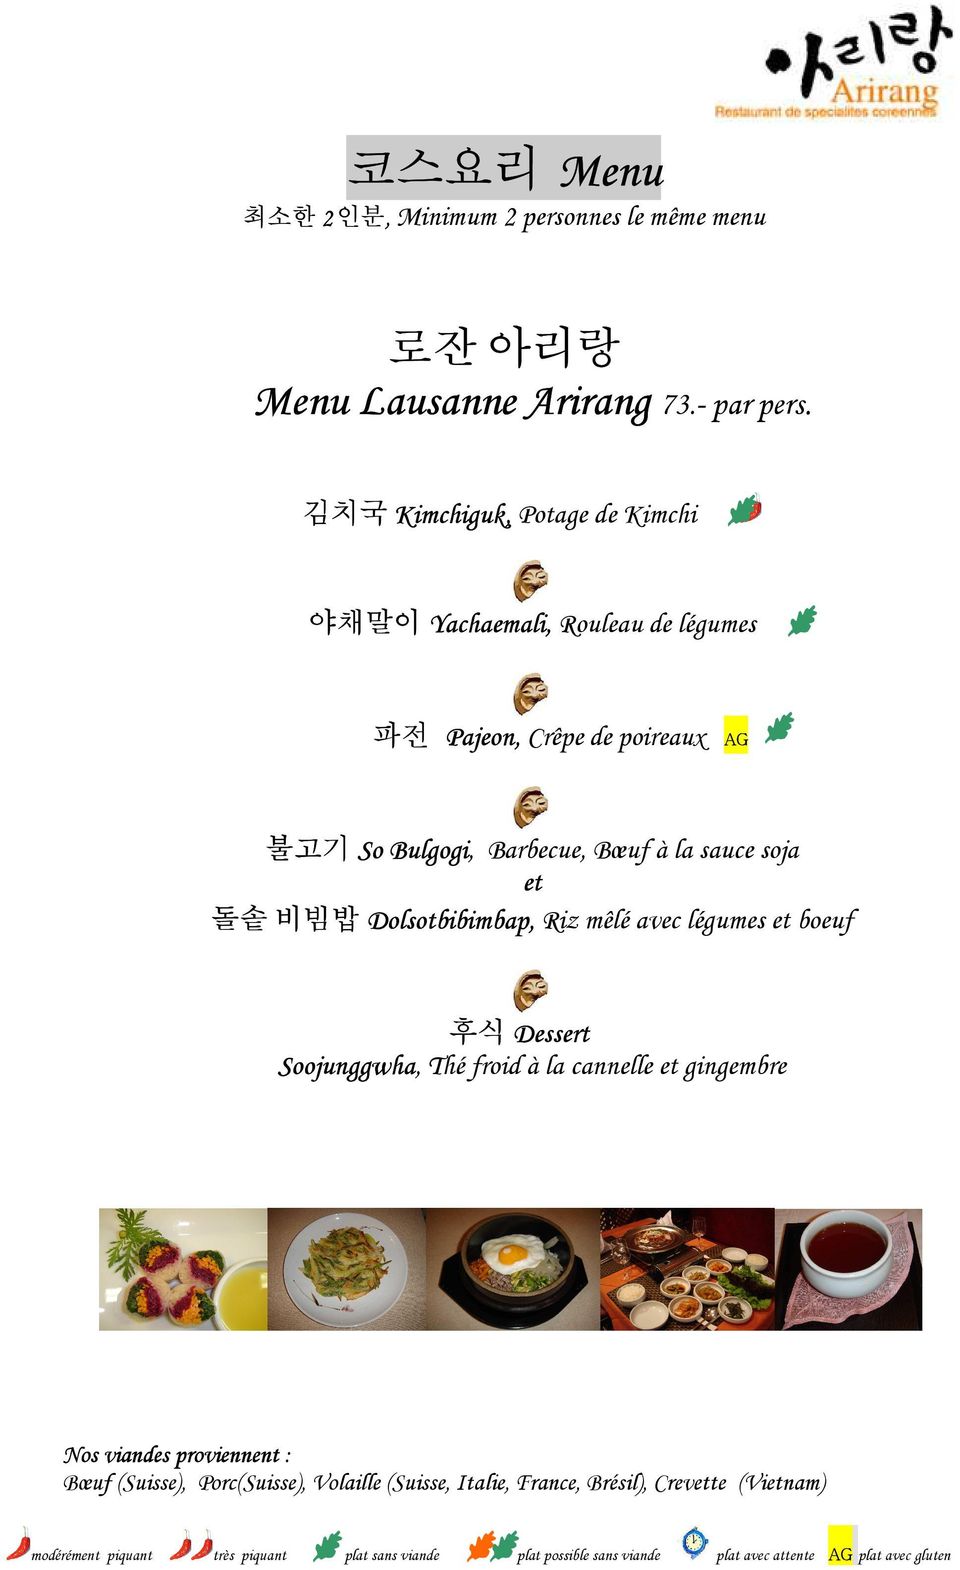 Barbecue, Bœuf à la sauce soja et 돌솥 비빔밥 Dolsotbibimbap, Riz mêlé avec légumes et boeuf 후식 Dessert Soojunggwha, Thé